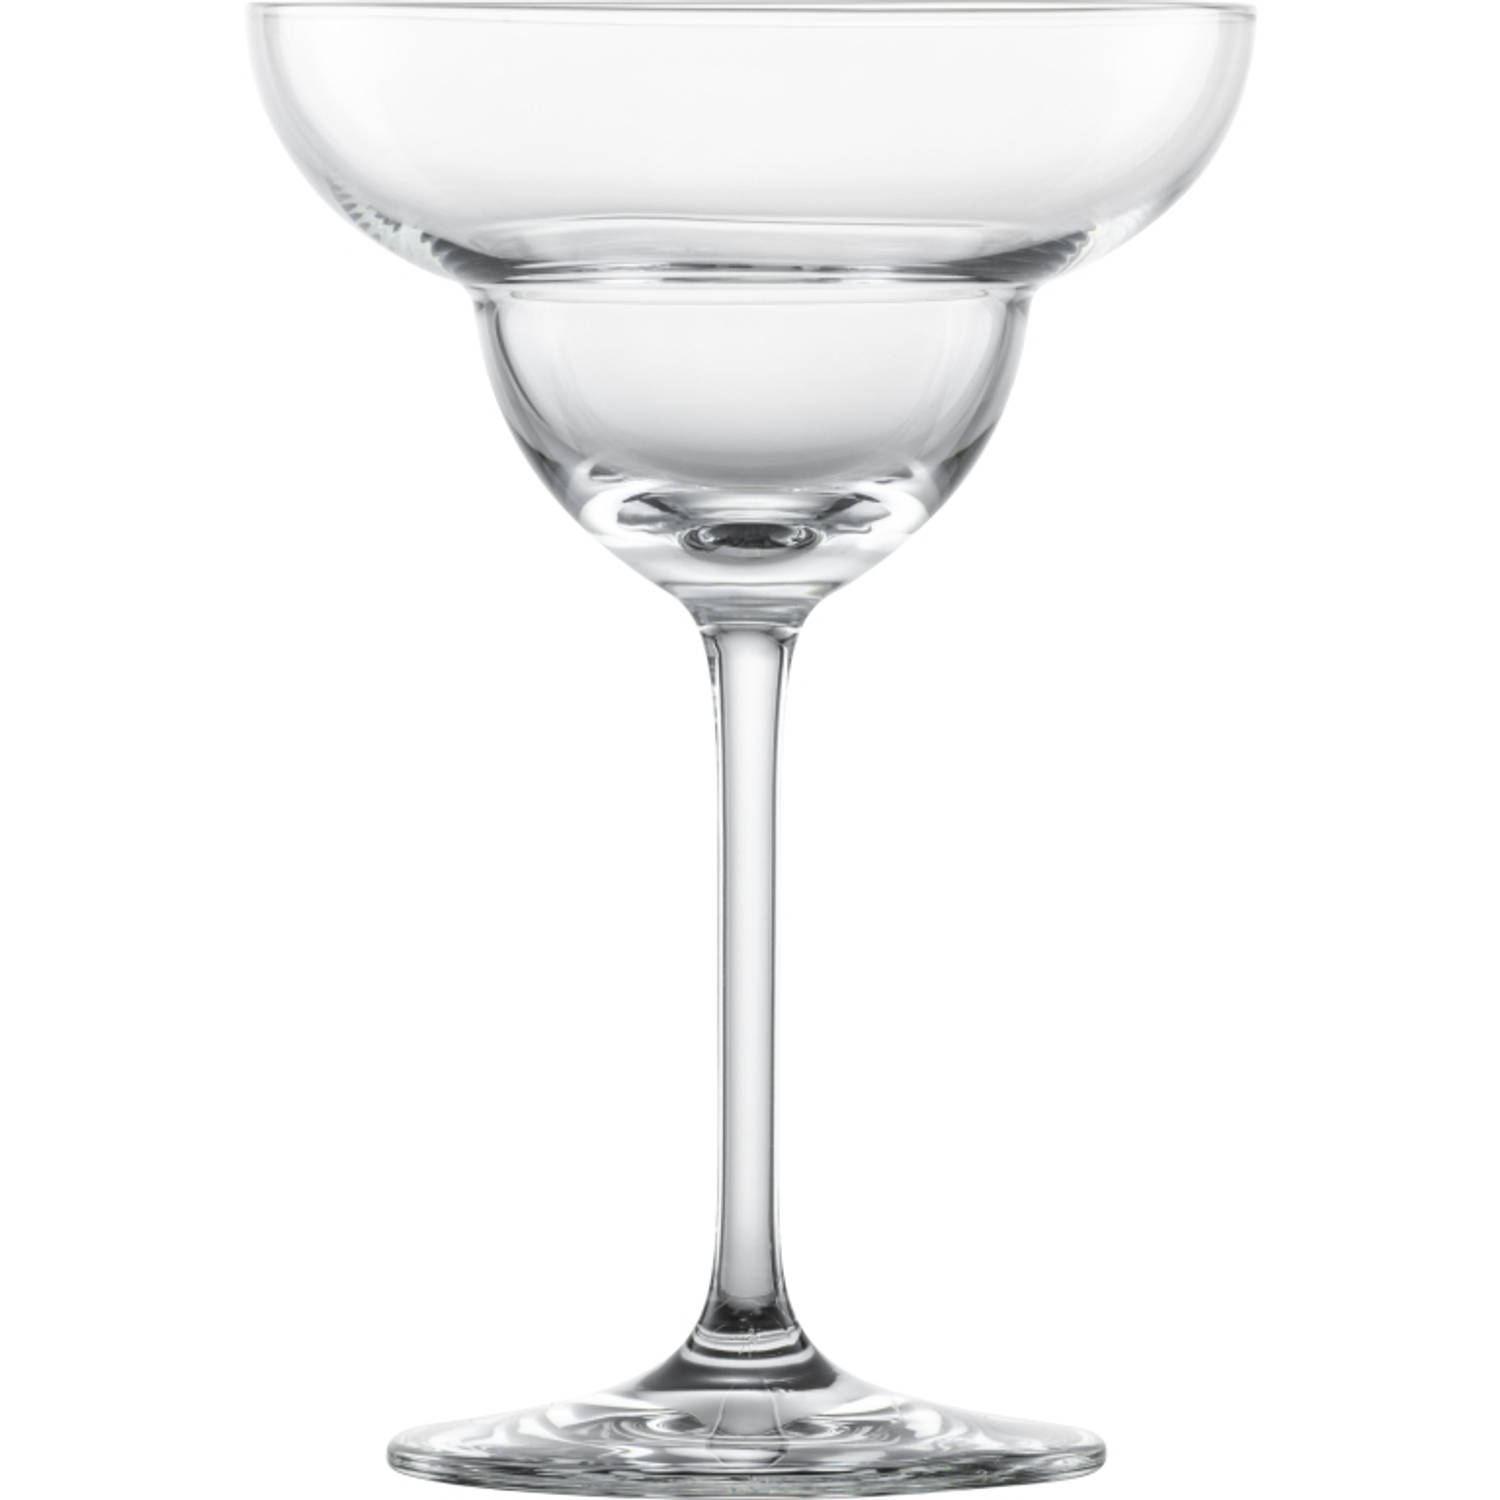 Schott Zwiesel Bar Special Margaritaglas - 283ml - 4 glazen